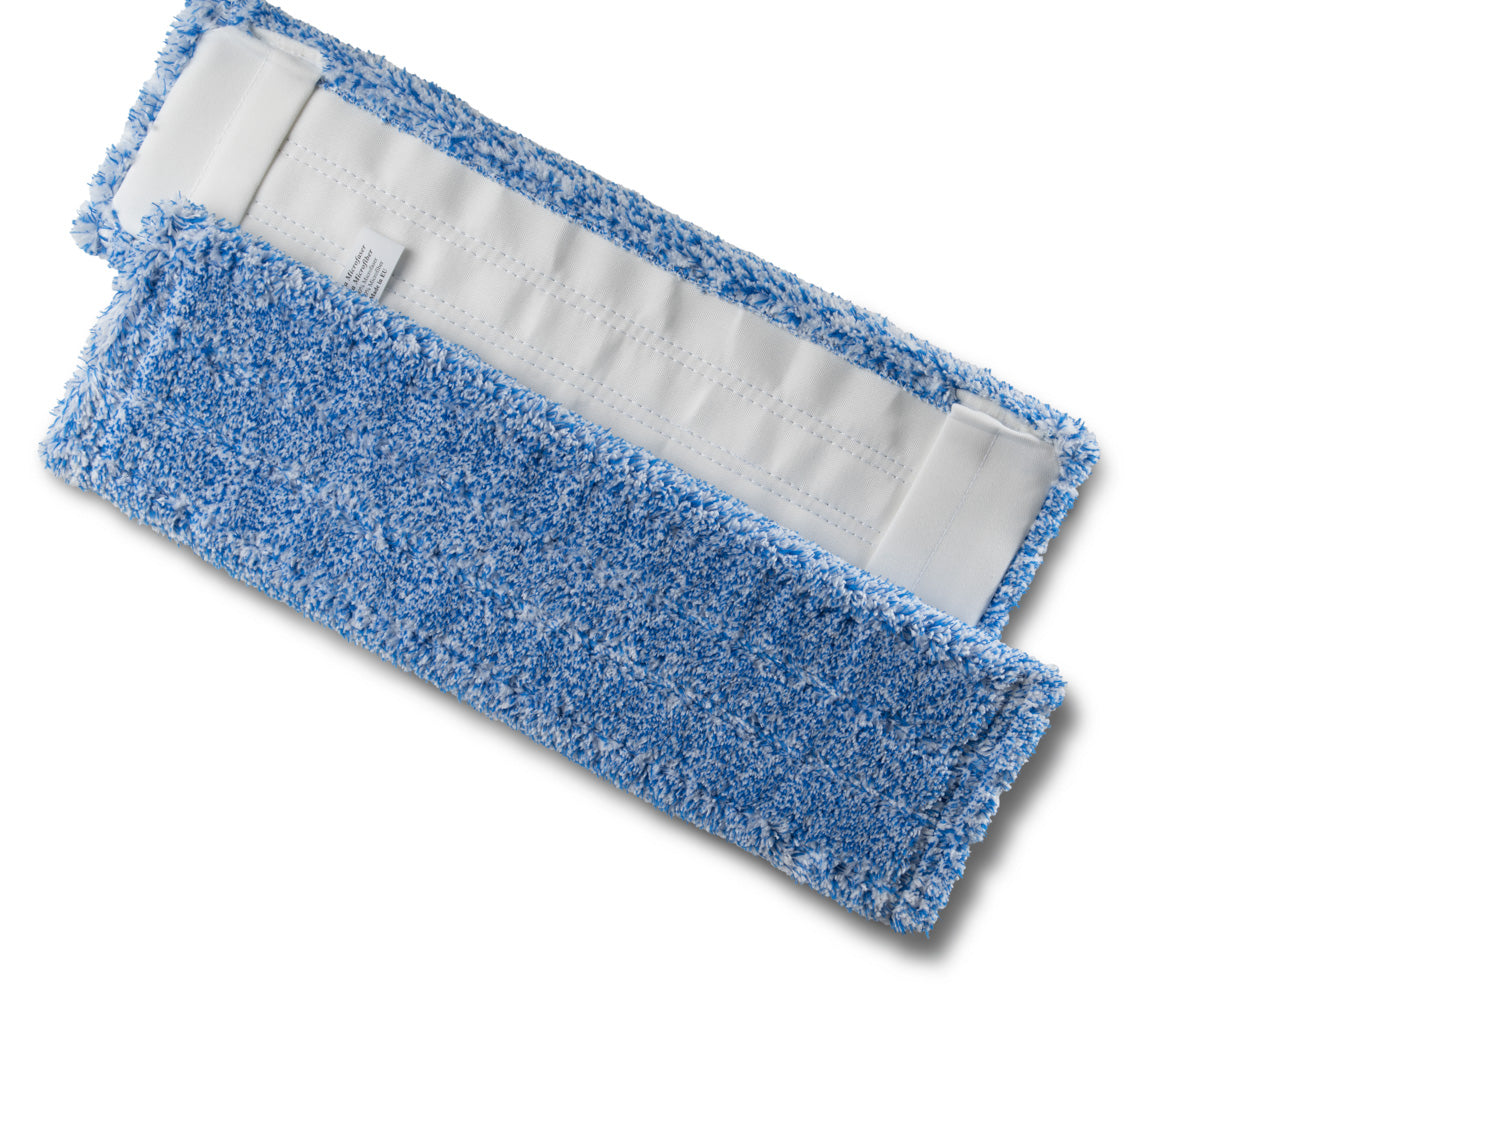 Flachpressenmopp PREMIUM blau meliert 40cm - Weigola Hygienevertrieb -  - Weigola Hygienevertrieb